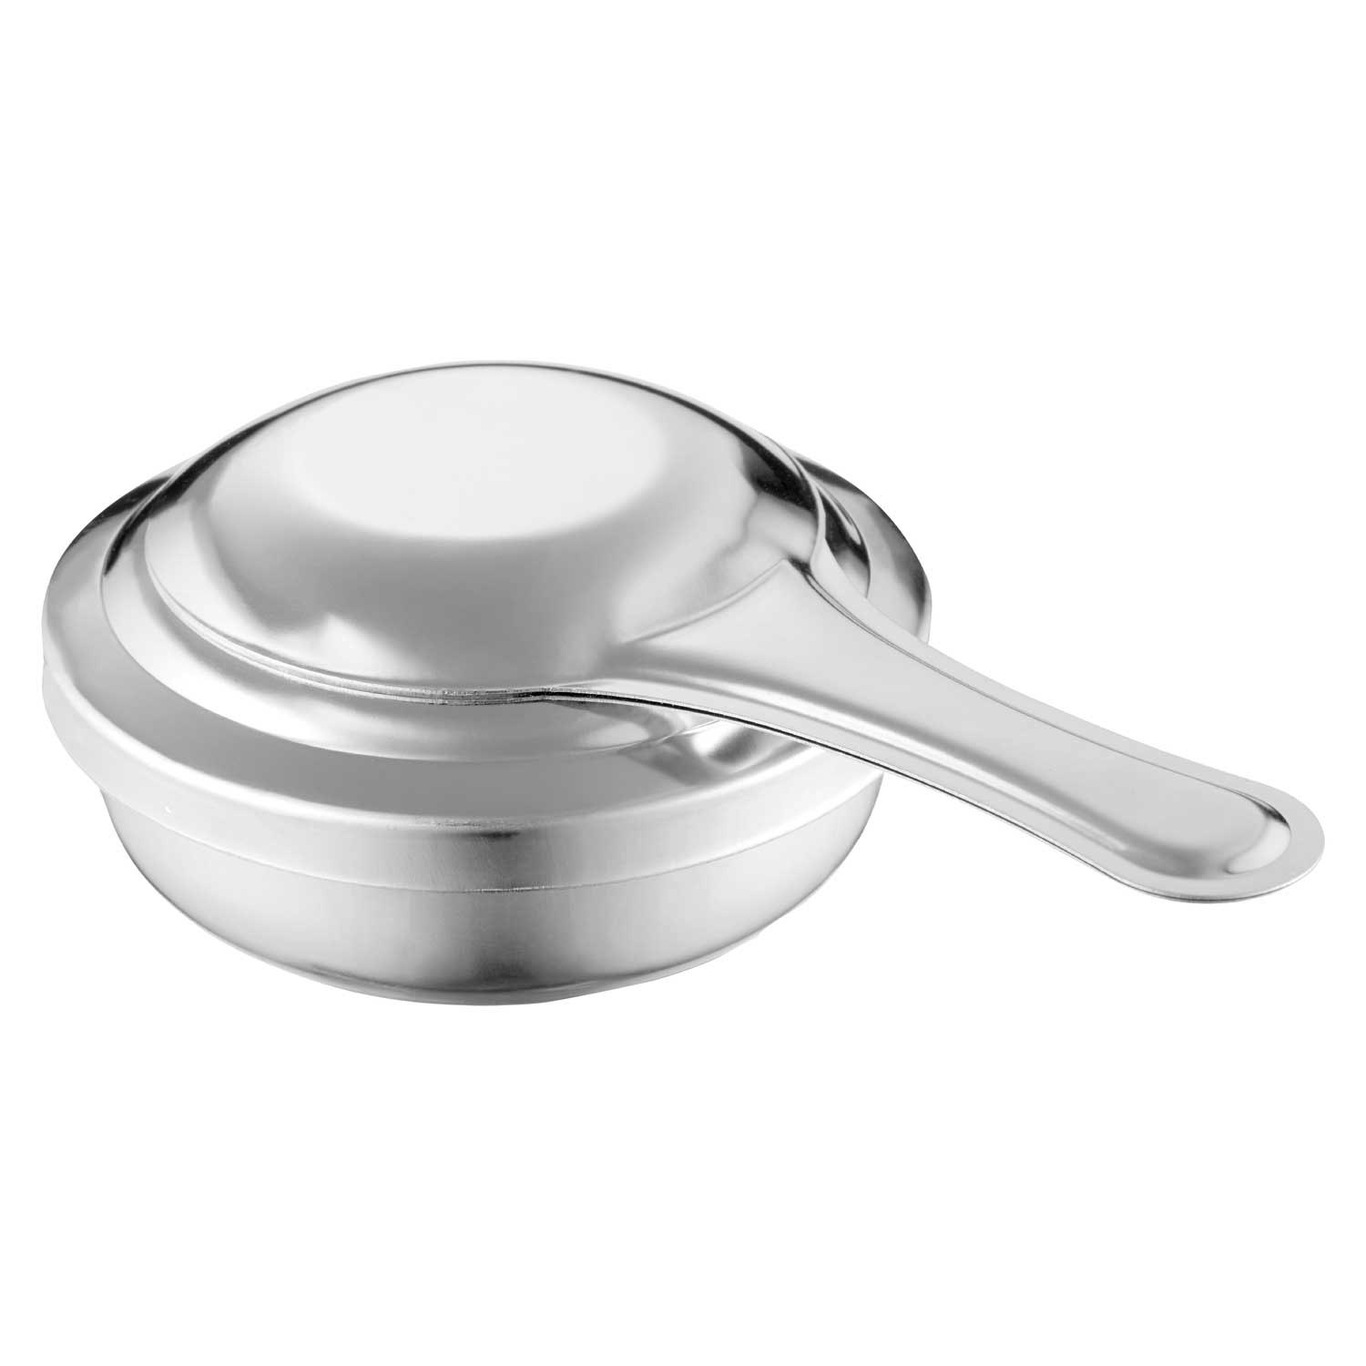 https://royaldesign.com/image/2/dorre-fonda-fondue-burner-0?w=800&quality=80